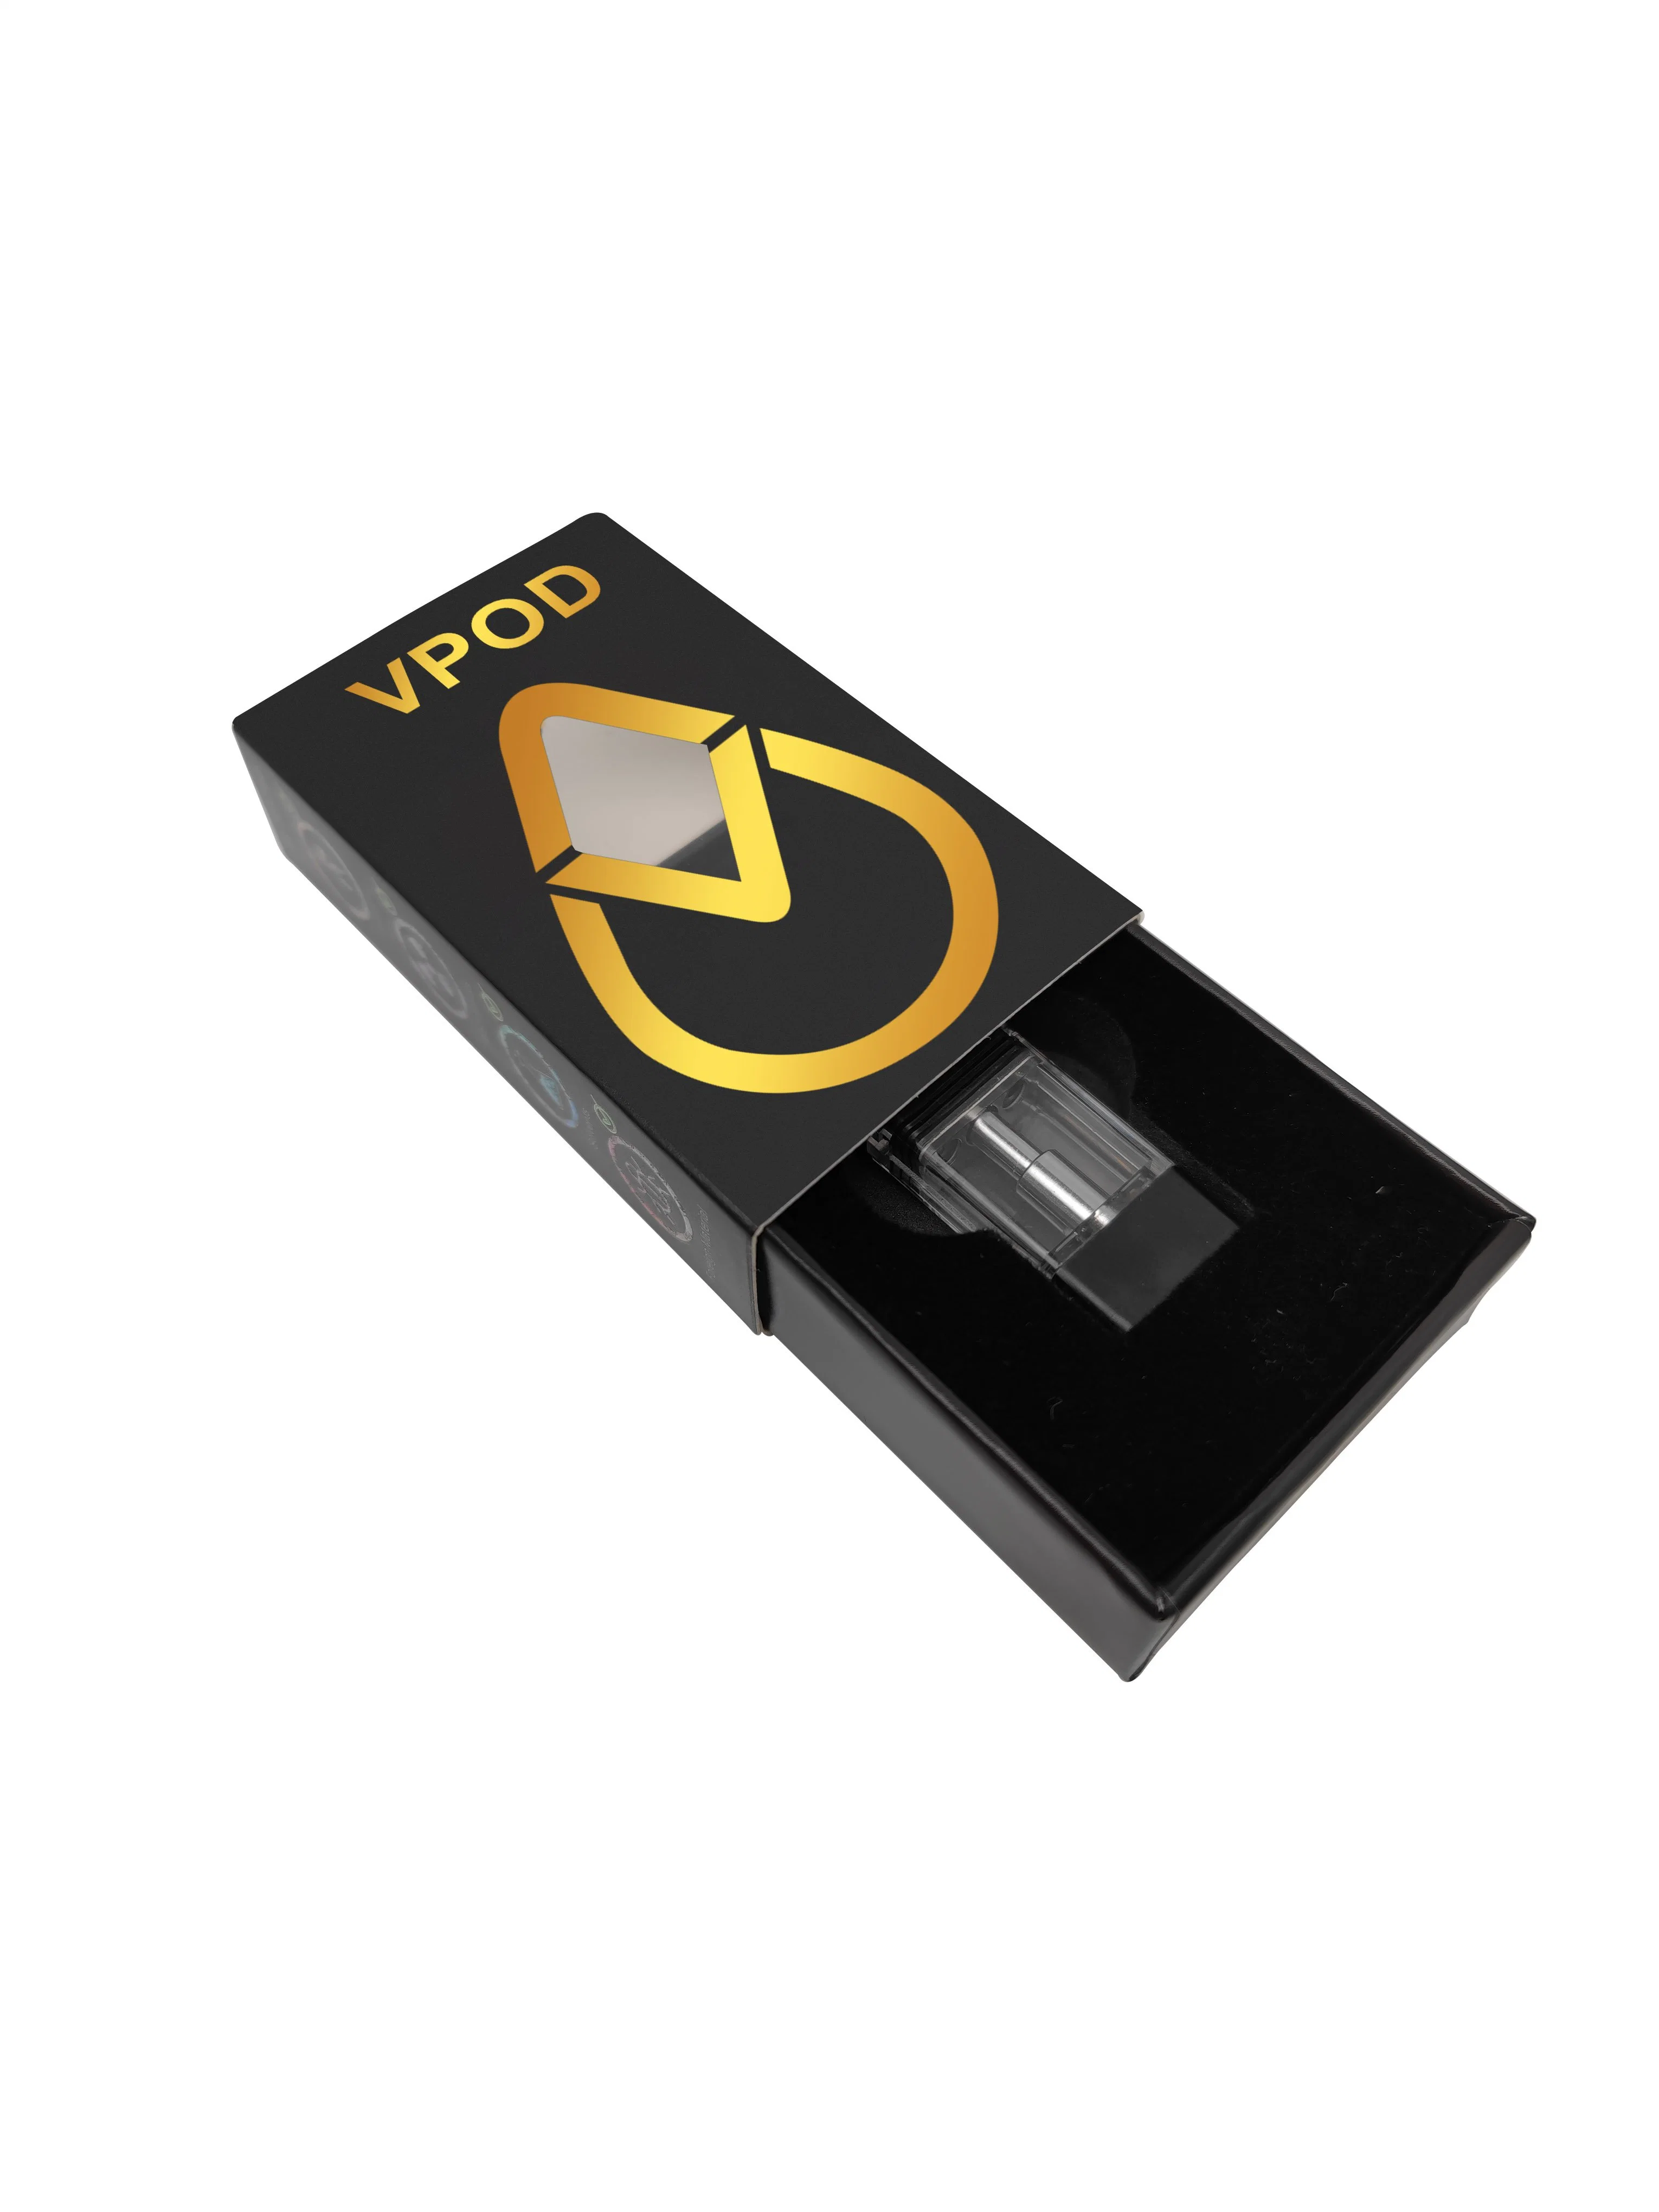 Пользовательские Makeon одноразовые электронные сигареты подъемом Pod тележки Vfire Pod нанесите на окно Bag роскошь Vpod картона подарочная упаковка OEM бренда дизайн упаковки